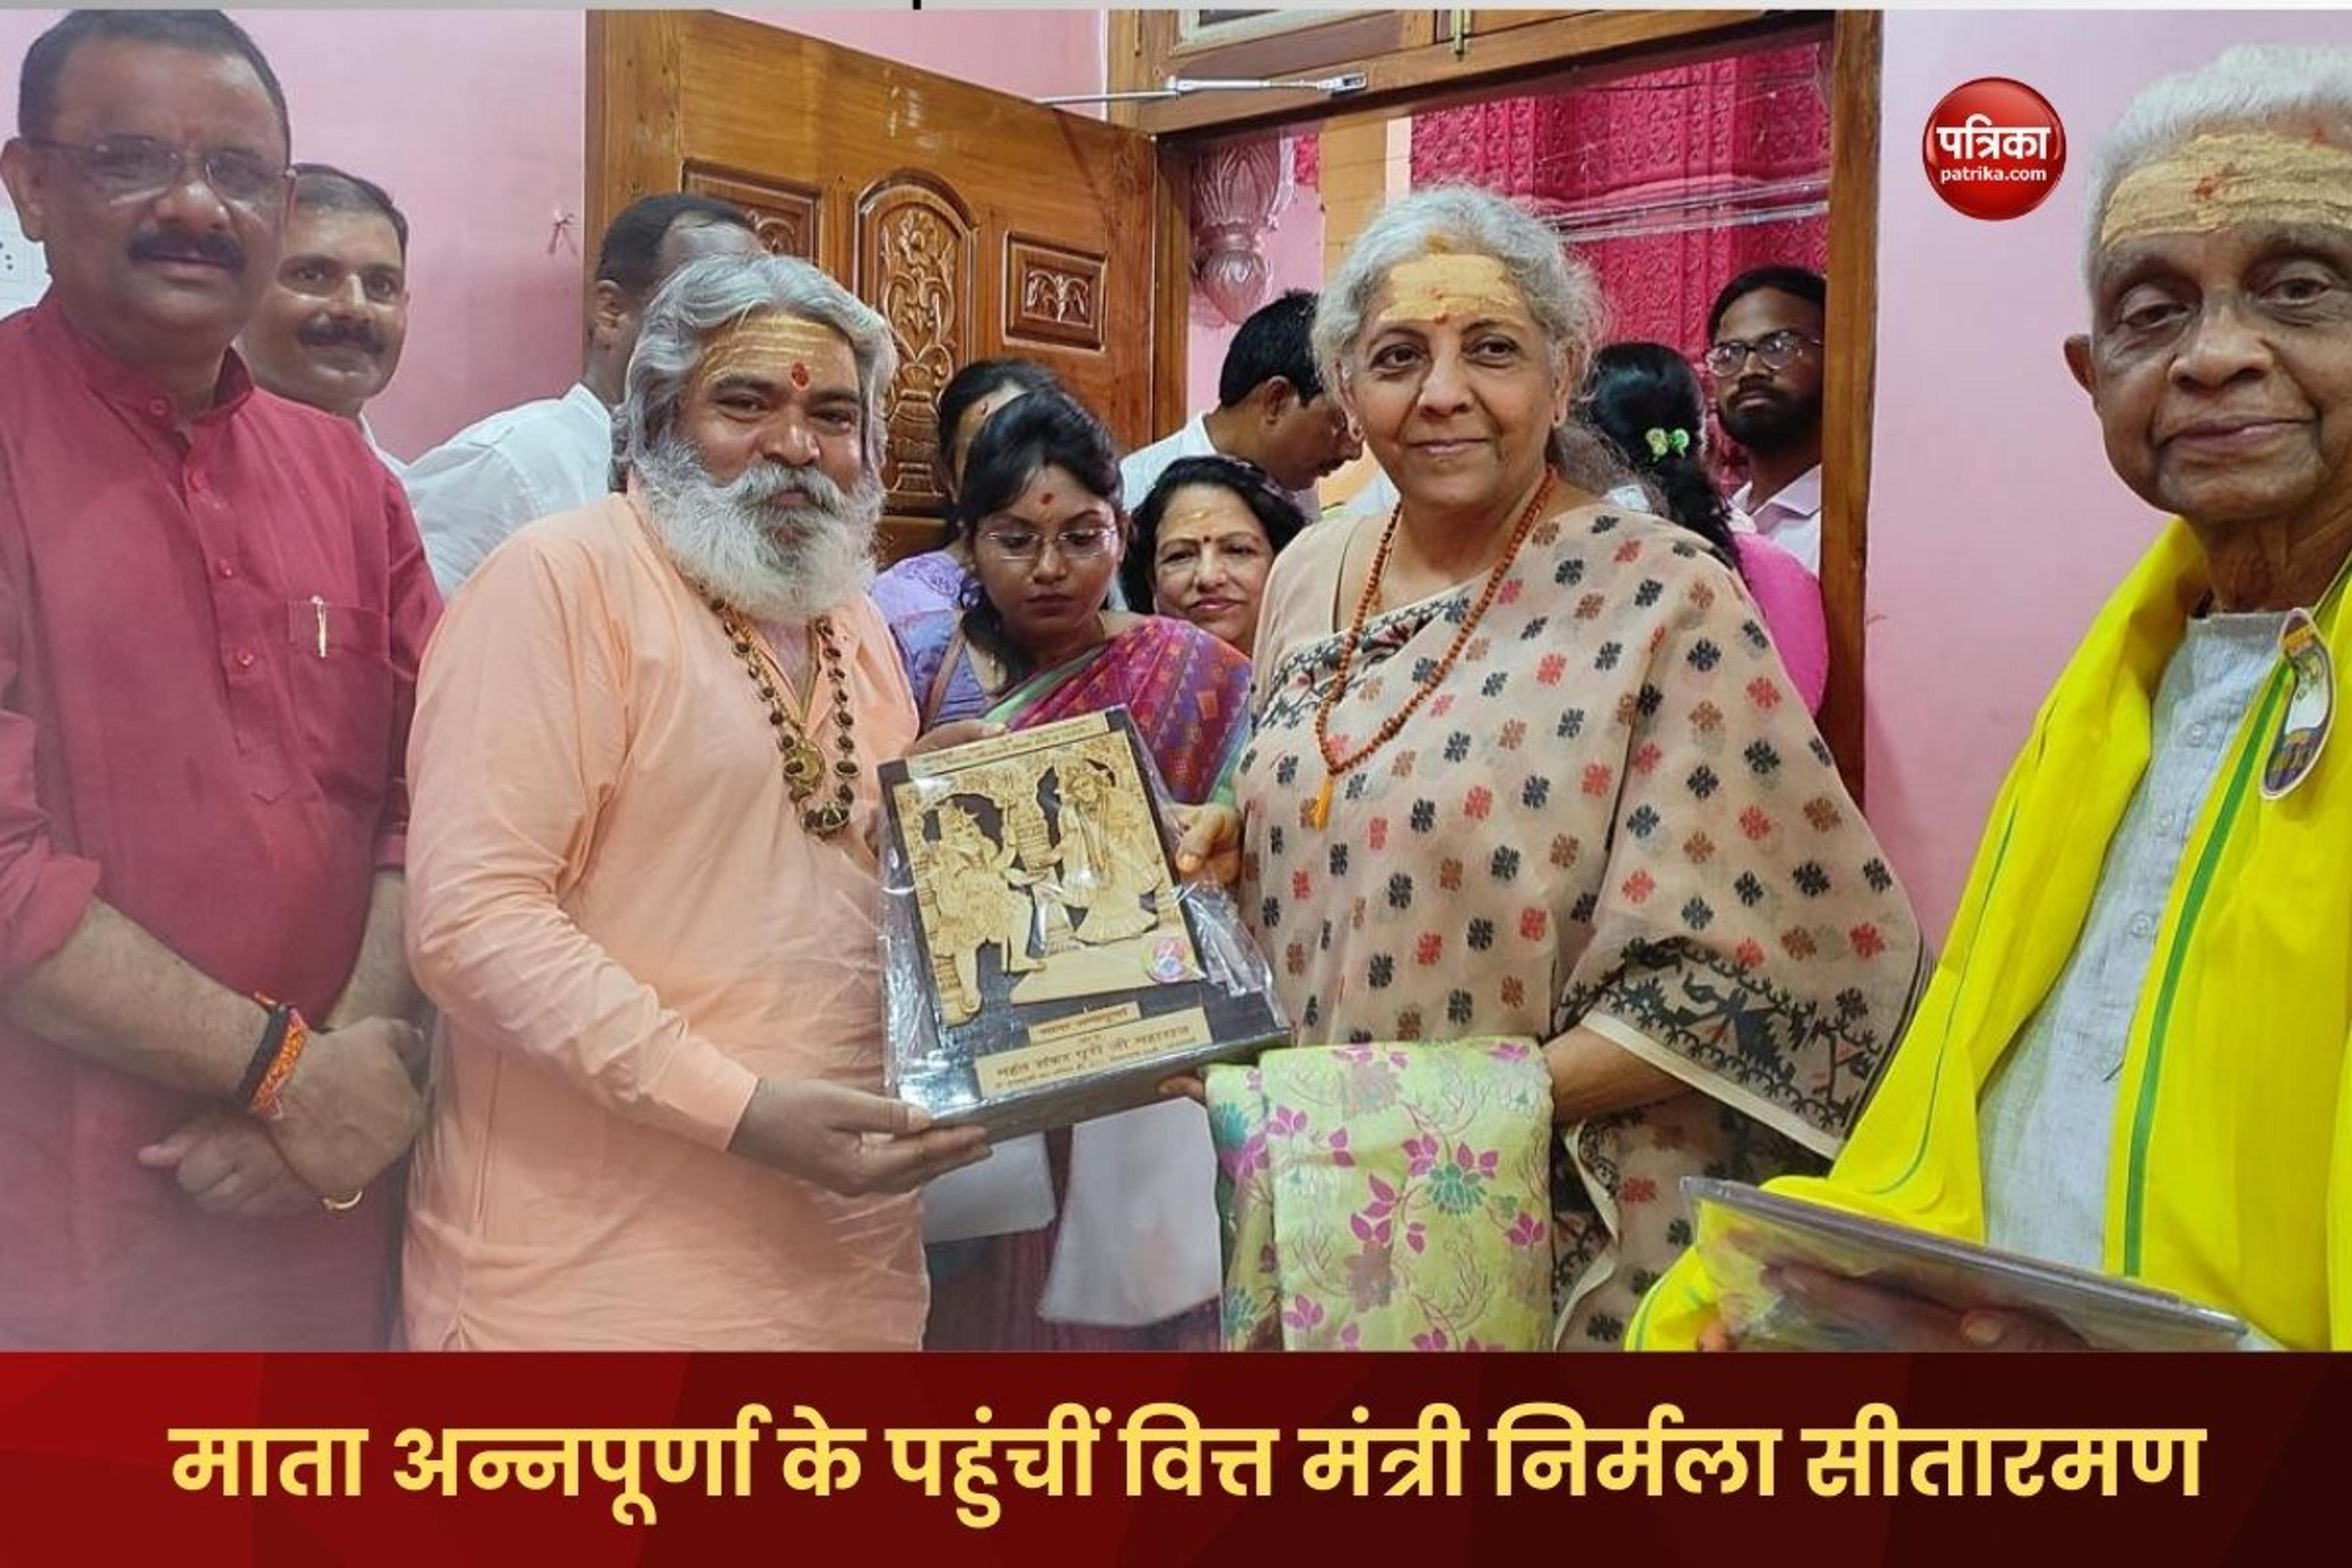 Varanasi News : वित्त मंत्री निर्मला सीतारमण ने श्रीकाशी विश्वनाथ और अन्नपूर्णा मंदिर में नवाया शीश